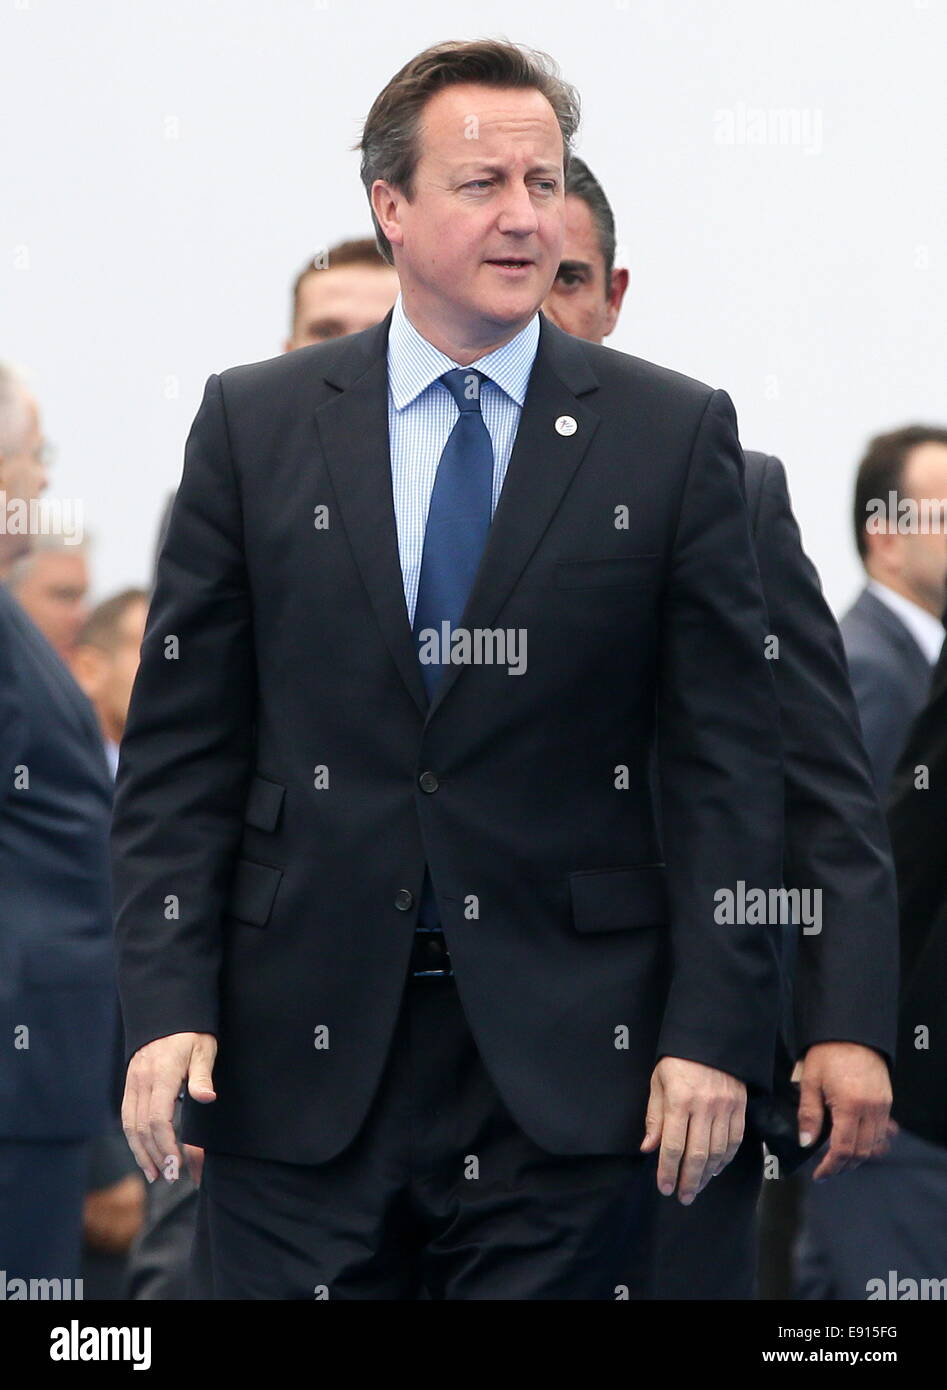 Milano, Italia. Xvii oct, 2014. Primo ministro britannico David Cameron arriva al decimo incontro Asia-Europa (ASEM) a Milano centro congressi (MiCo). Credito: Mikhail Metzel/TASS/Alamy Live News Foto Stock